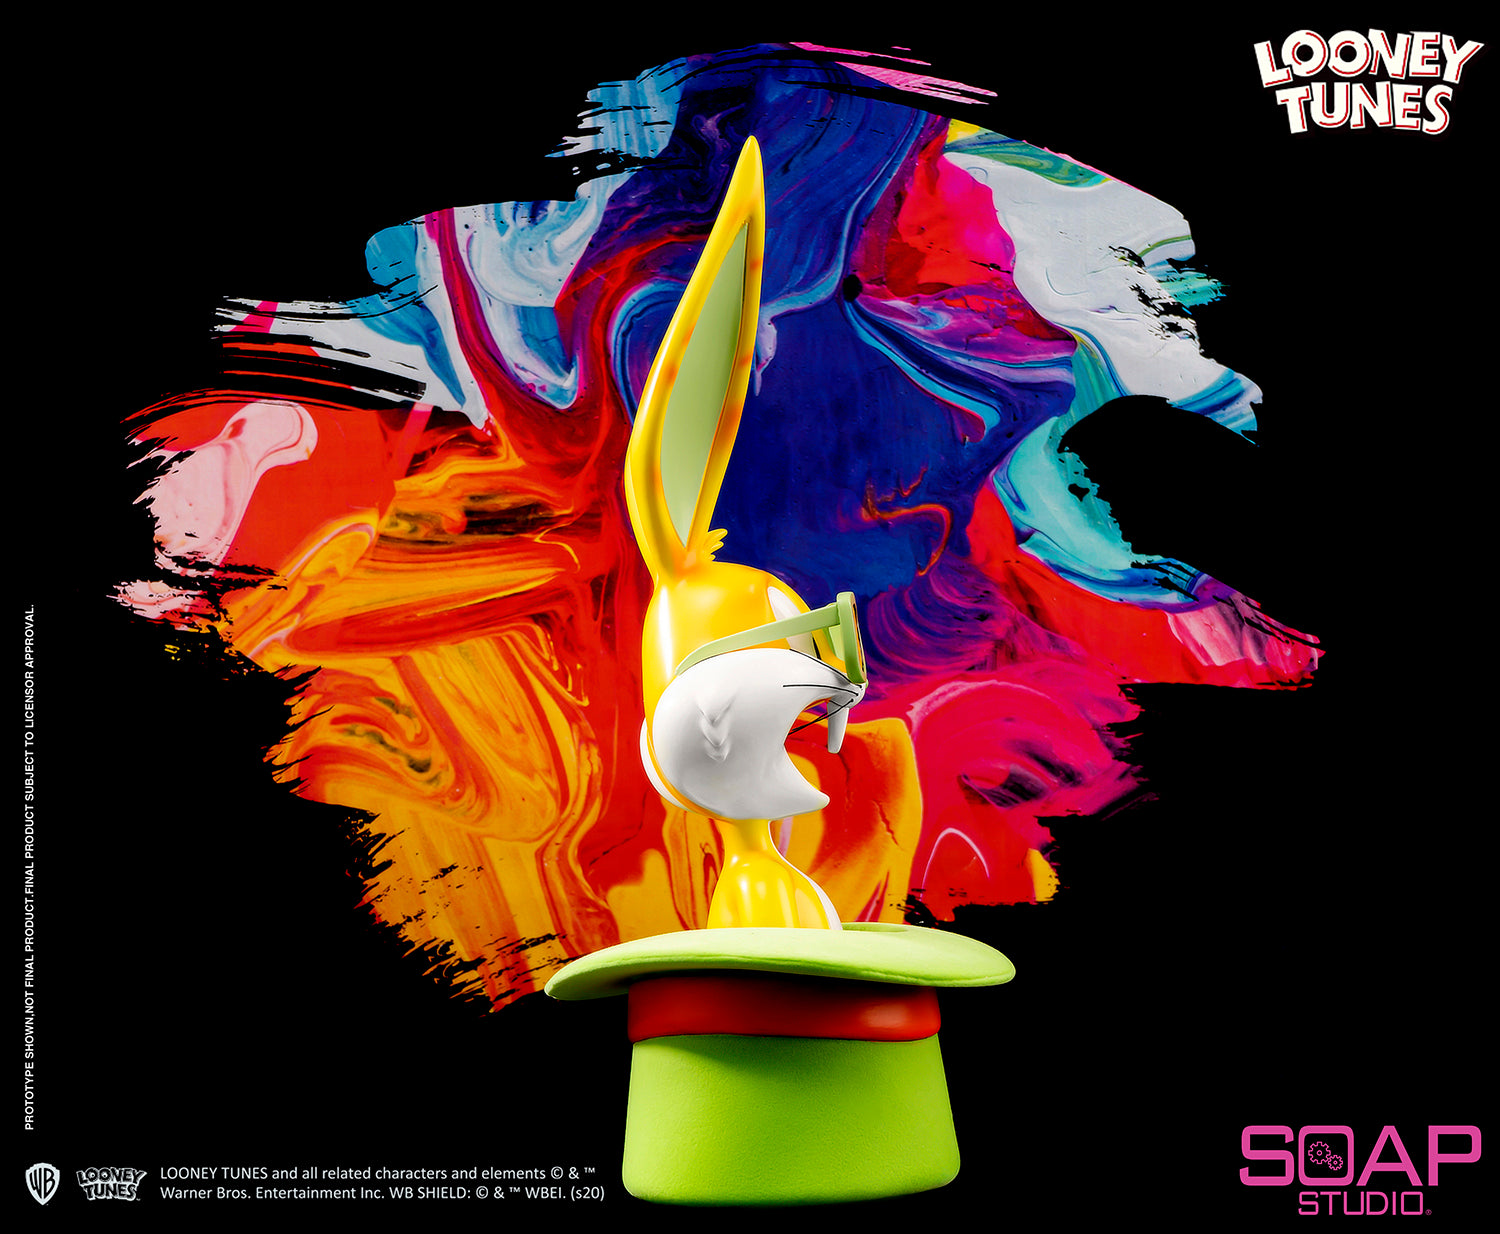 Soap Studio CA105P Looney Tunes - Bugs Bunny Tophat Bust (Pop-Art)